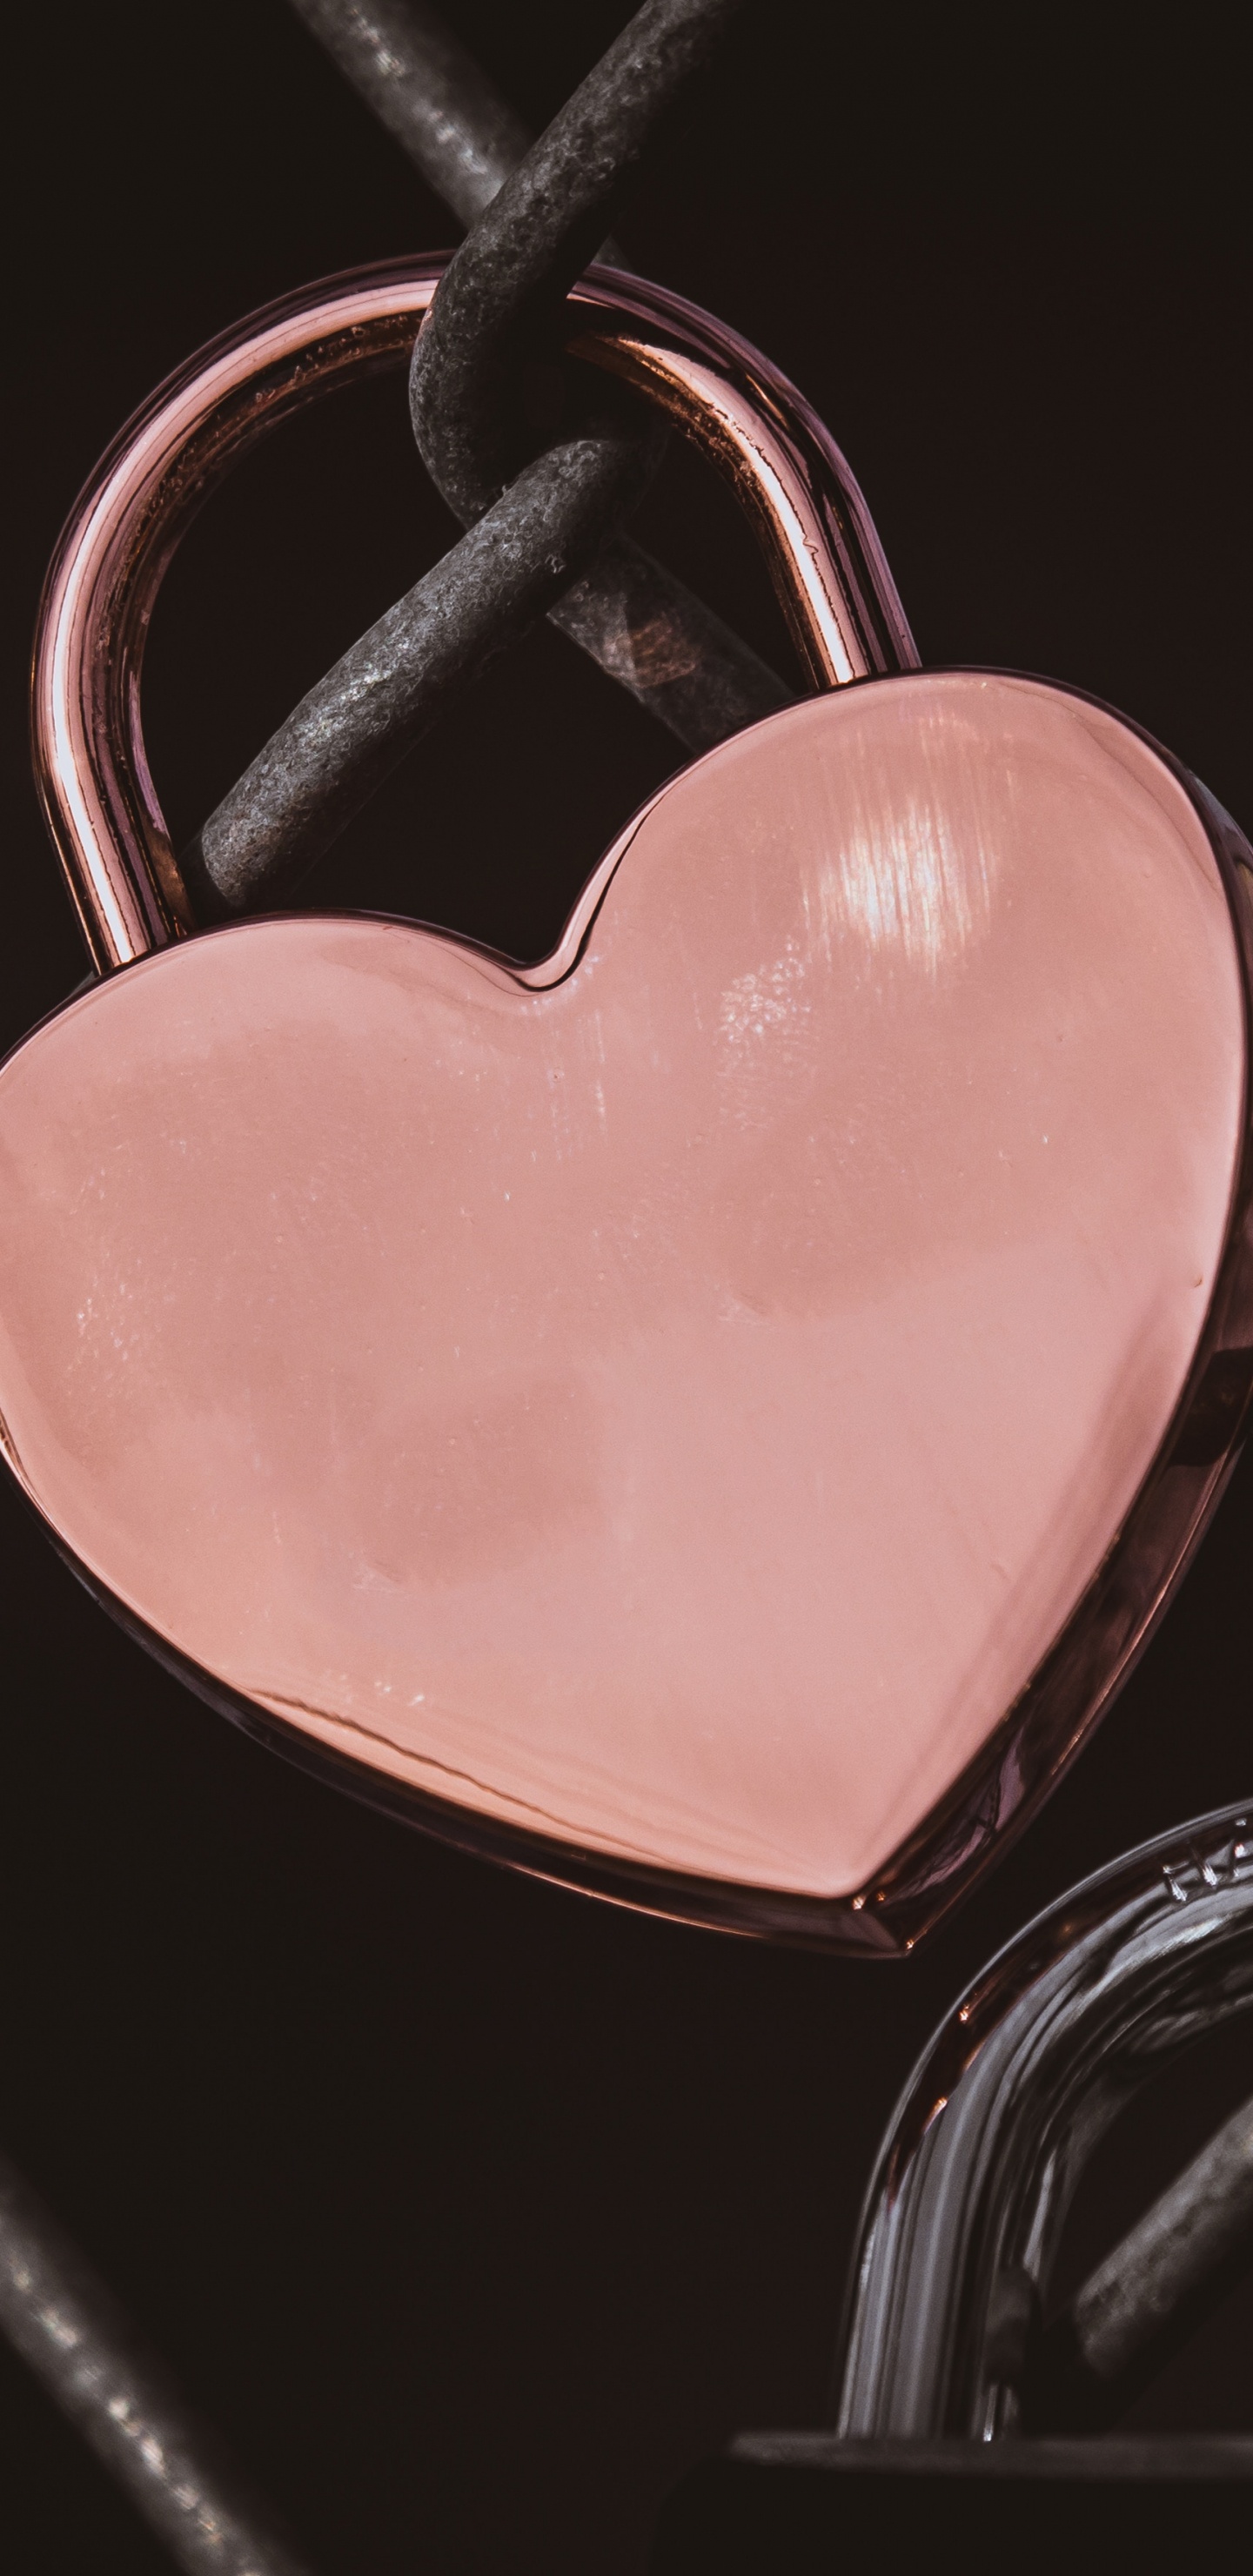 心脏, 粉红色, 爱情, 器官, 人类的身体 壁纸 1440x2960 允许